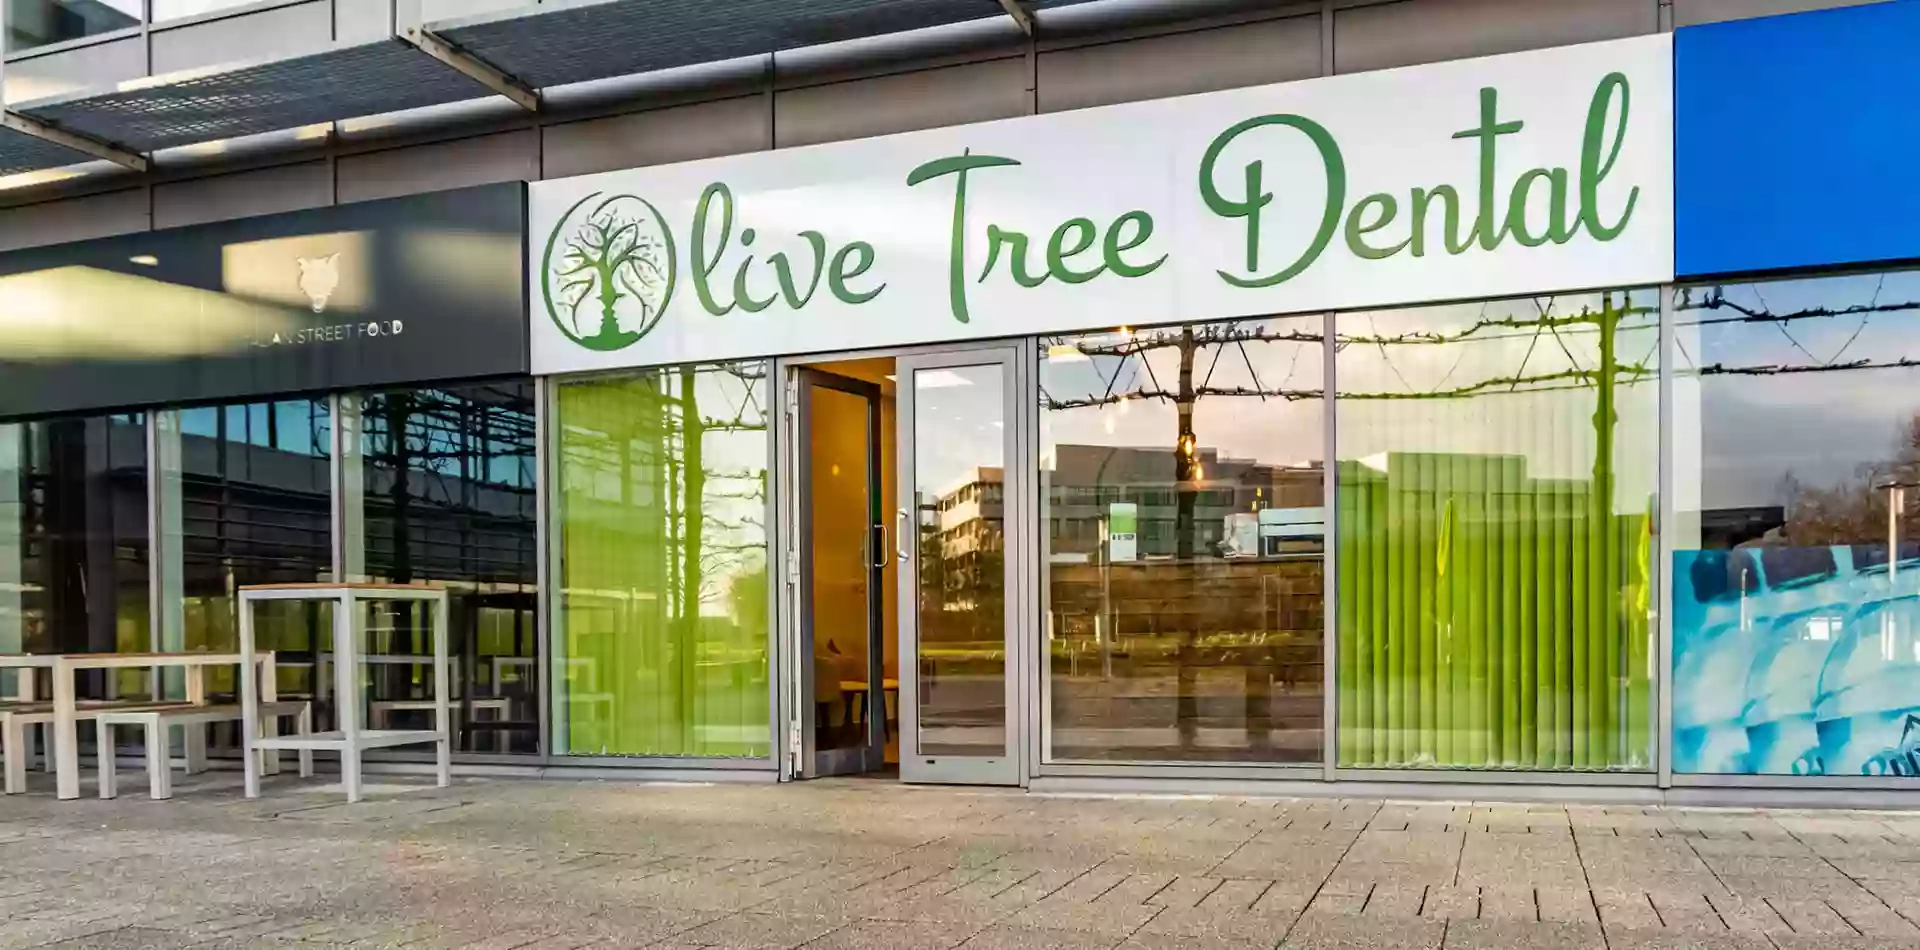 Olive Tree Dental